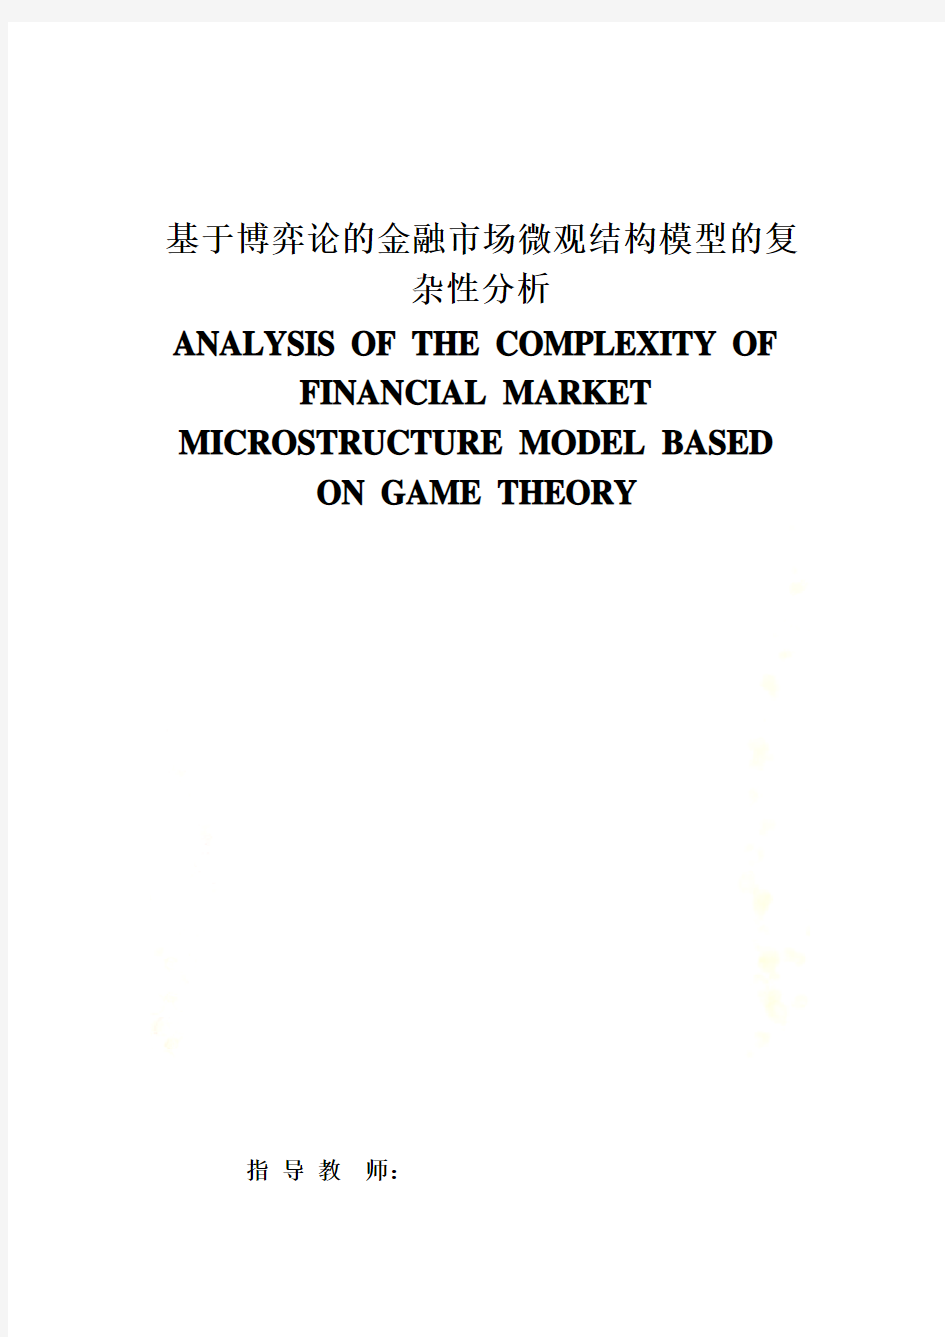 基于博弈论的金融市场微观结构模型的复杂分析